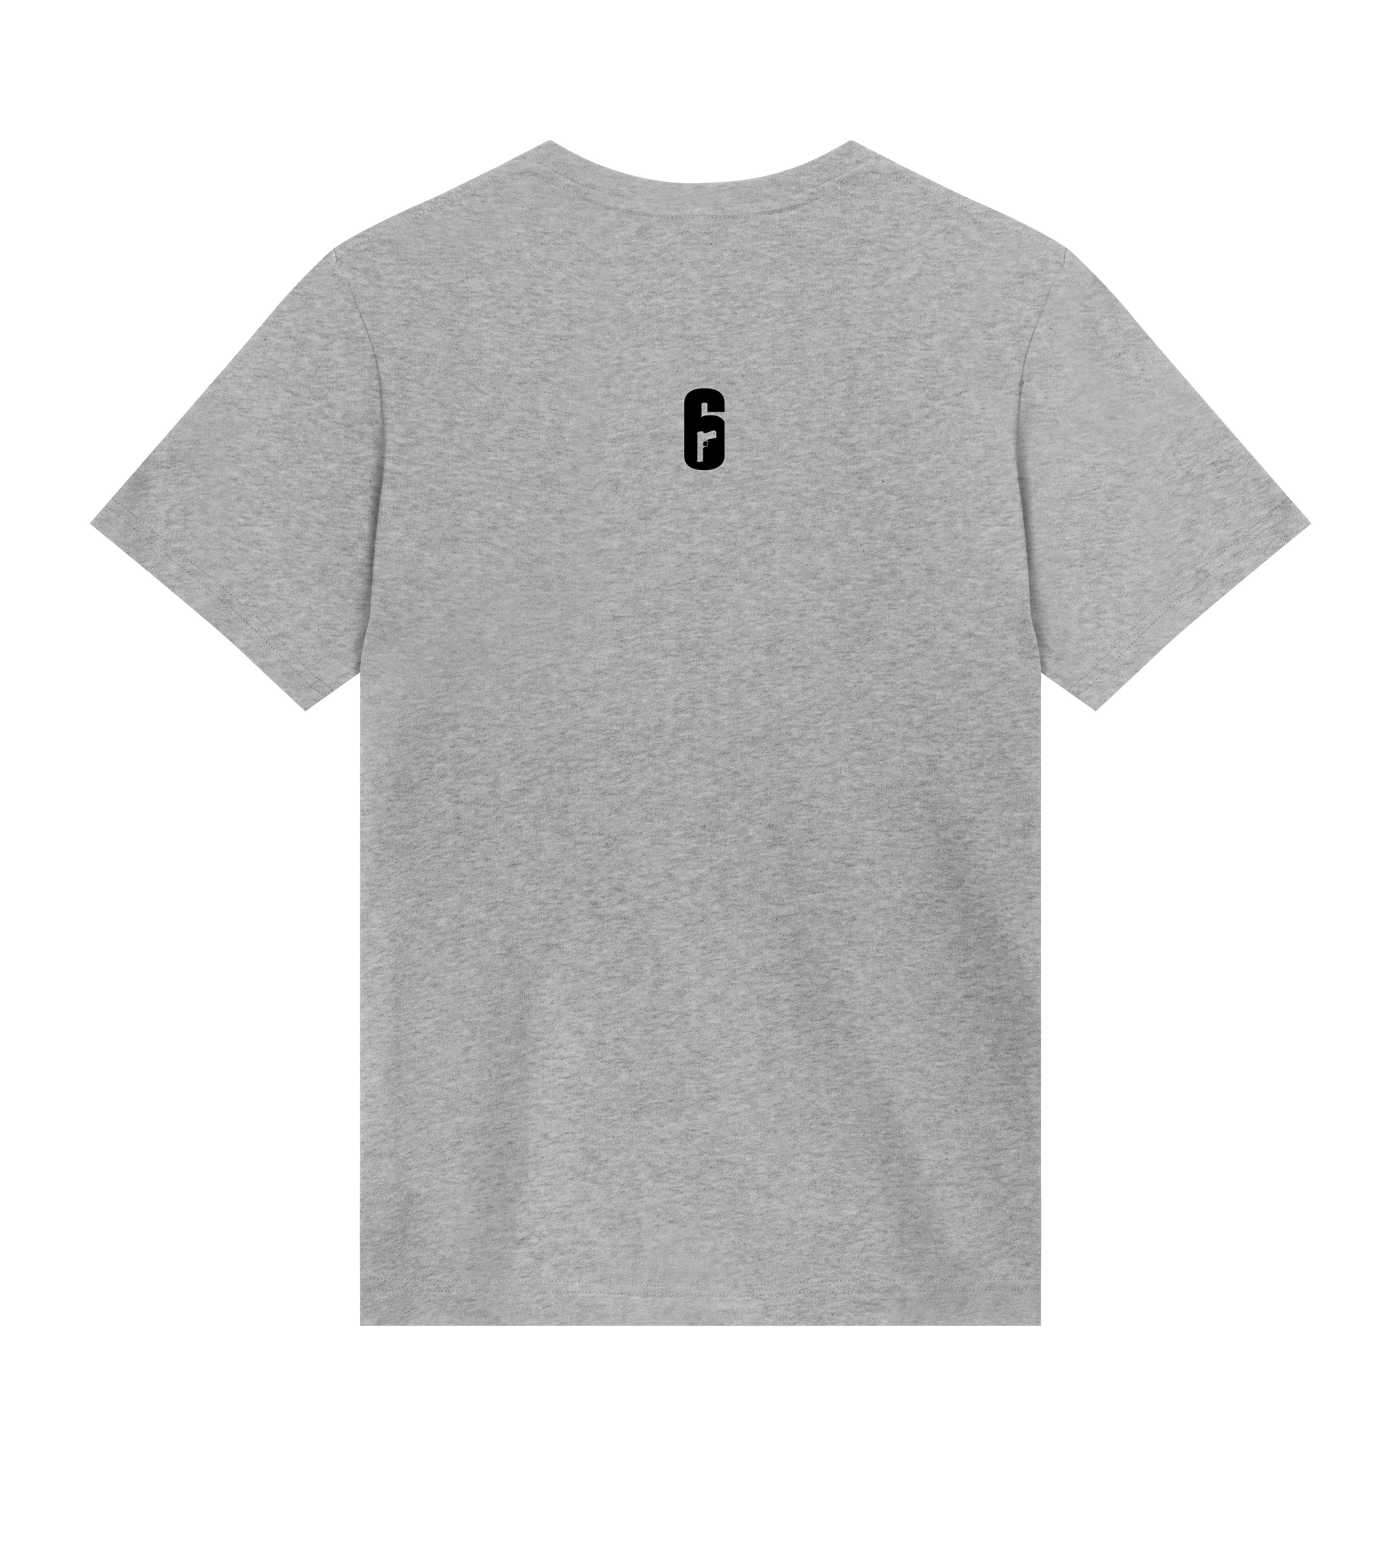 6 SIEGE - Wolfguard T-shirt